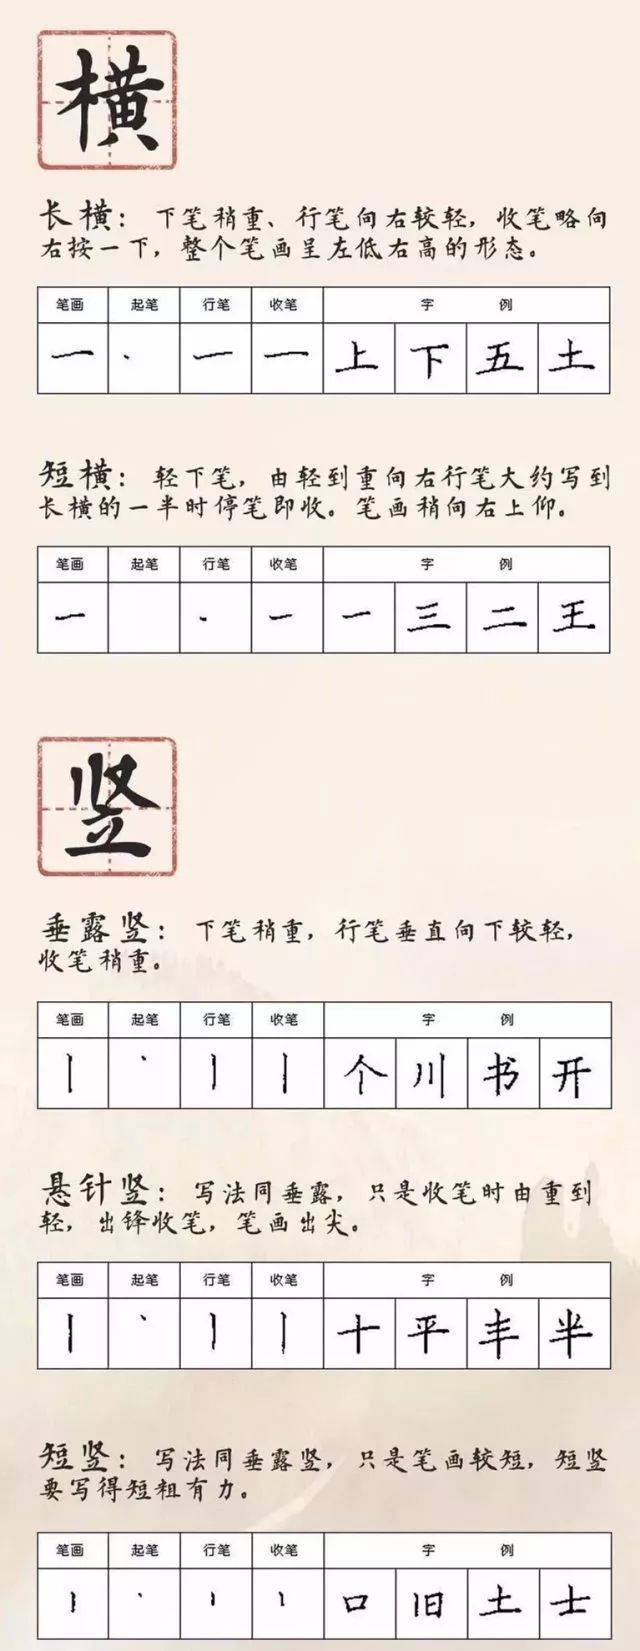 基本笔画学 汉字的基本笔画包括横,竖,撇,捺,点,提,钩,折,过